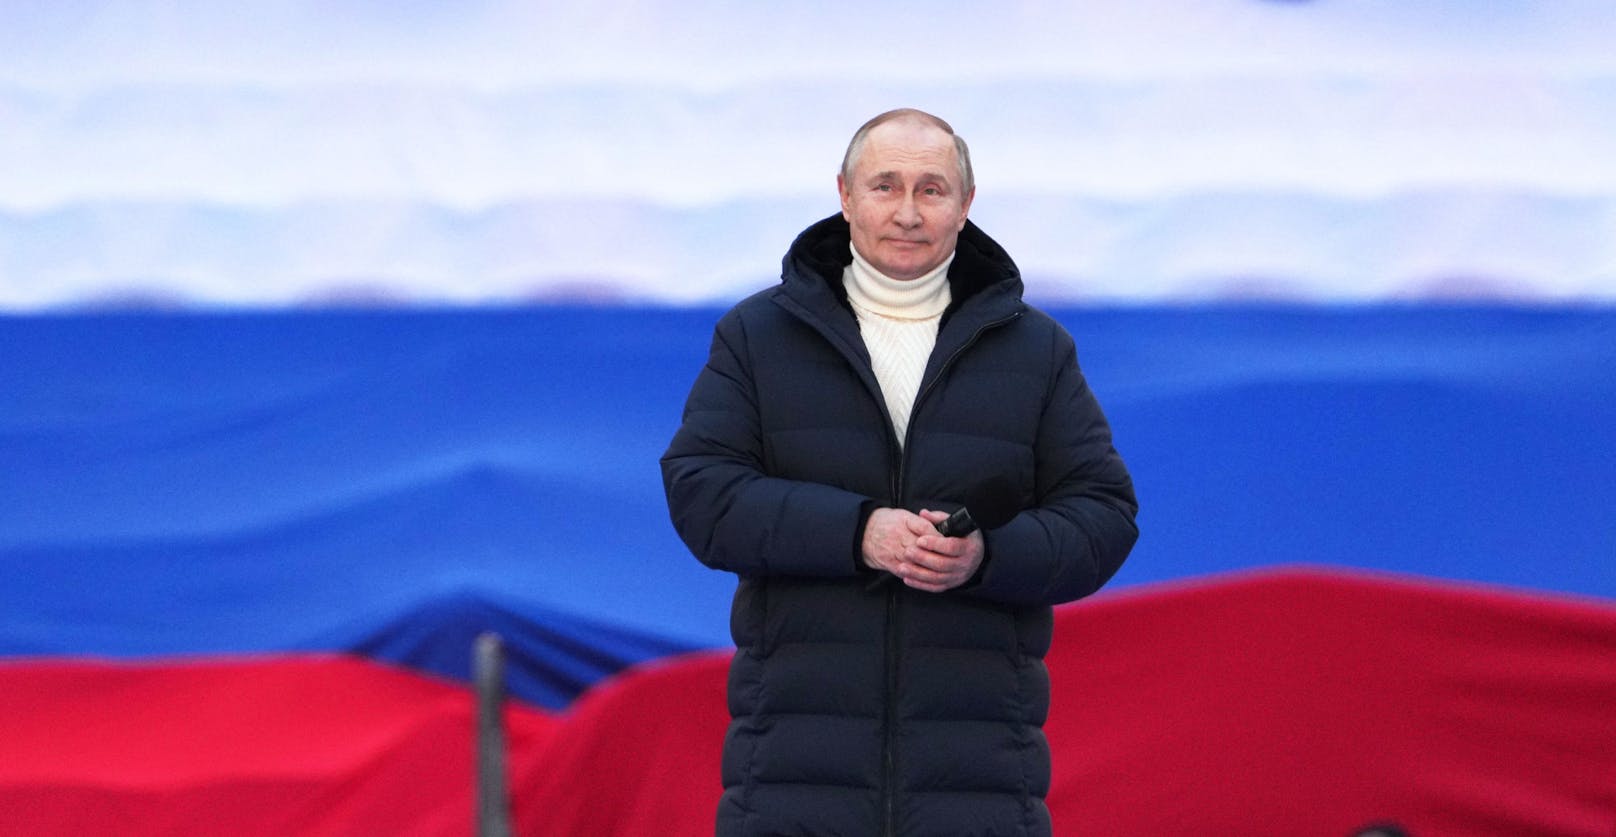 Neben der TV-Panne sorgte Putin aber auch noch mit seinem todschicken Look "made in Italy" für Aufregung.